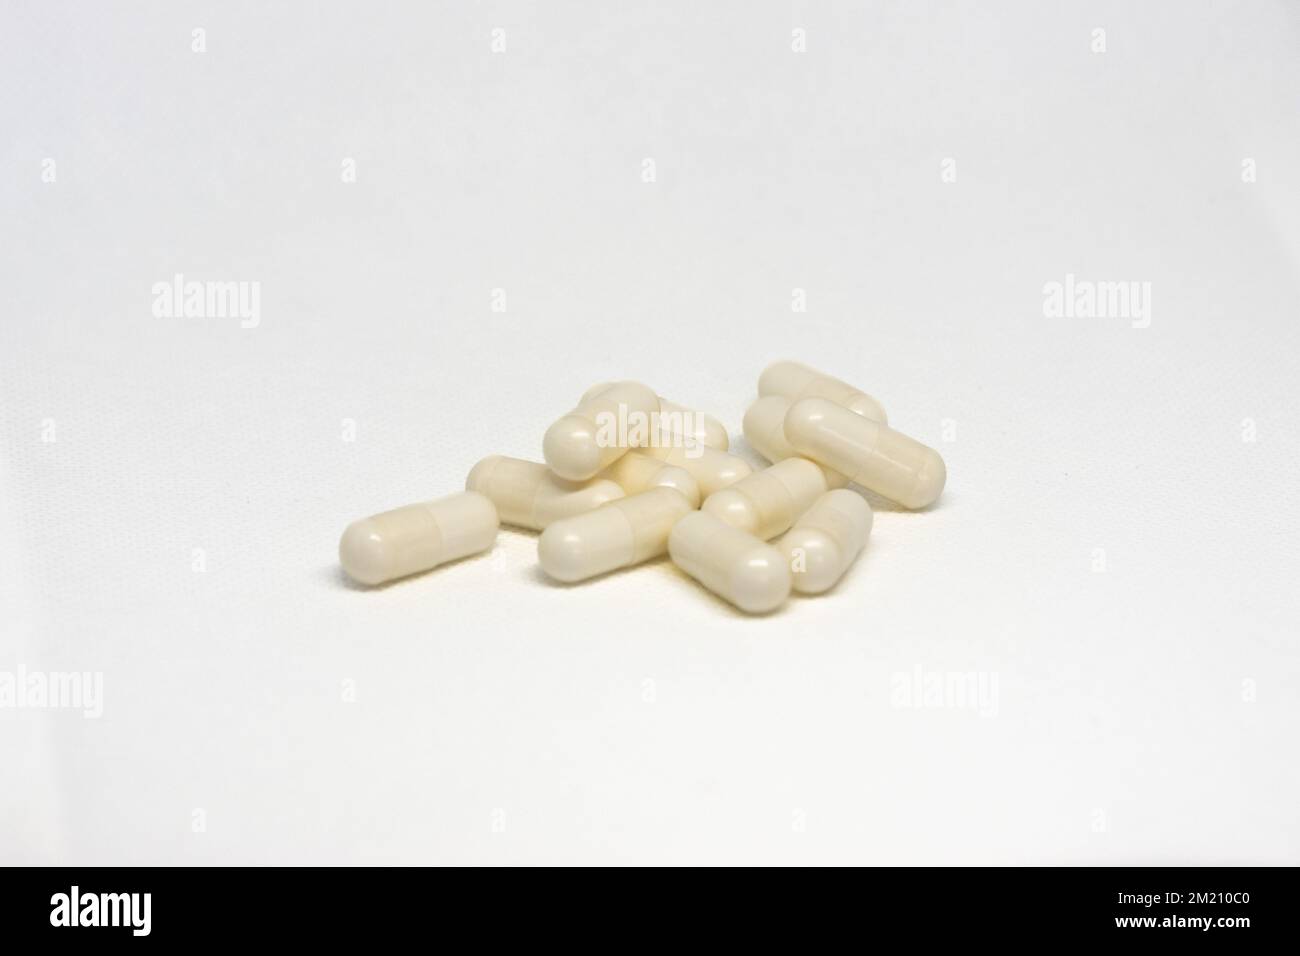 Pillole con Boswellia Carterii isolato su sfondo bianco Foto Stock